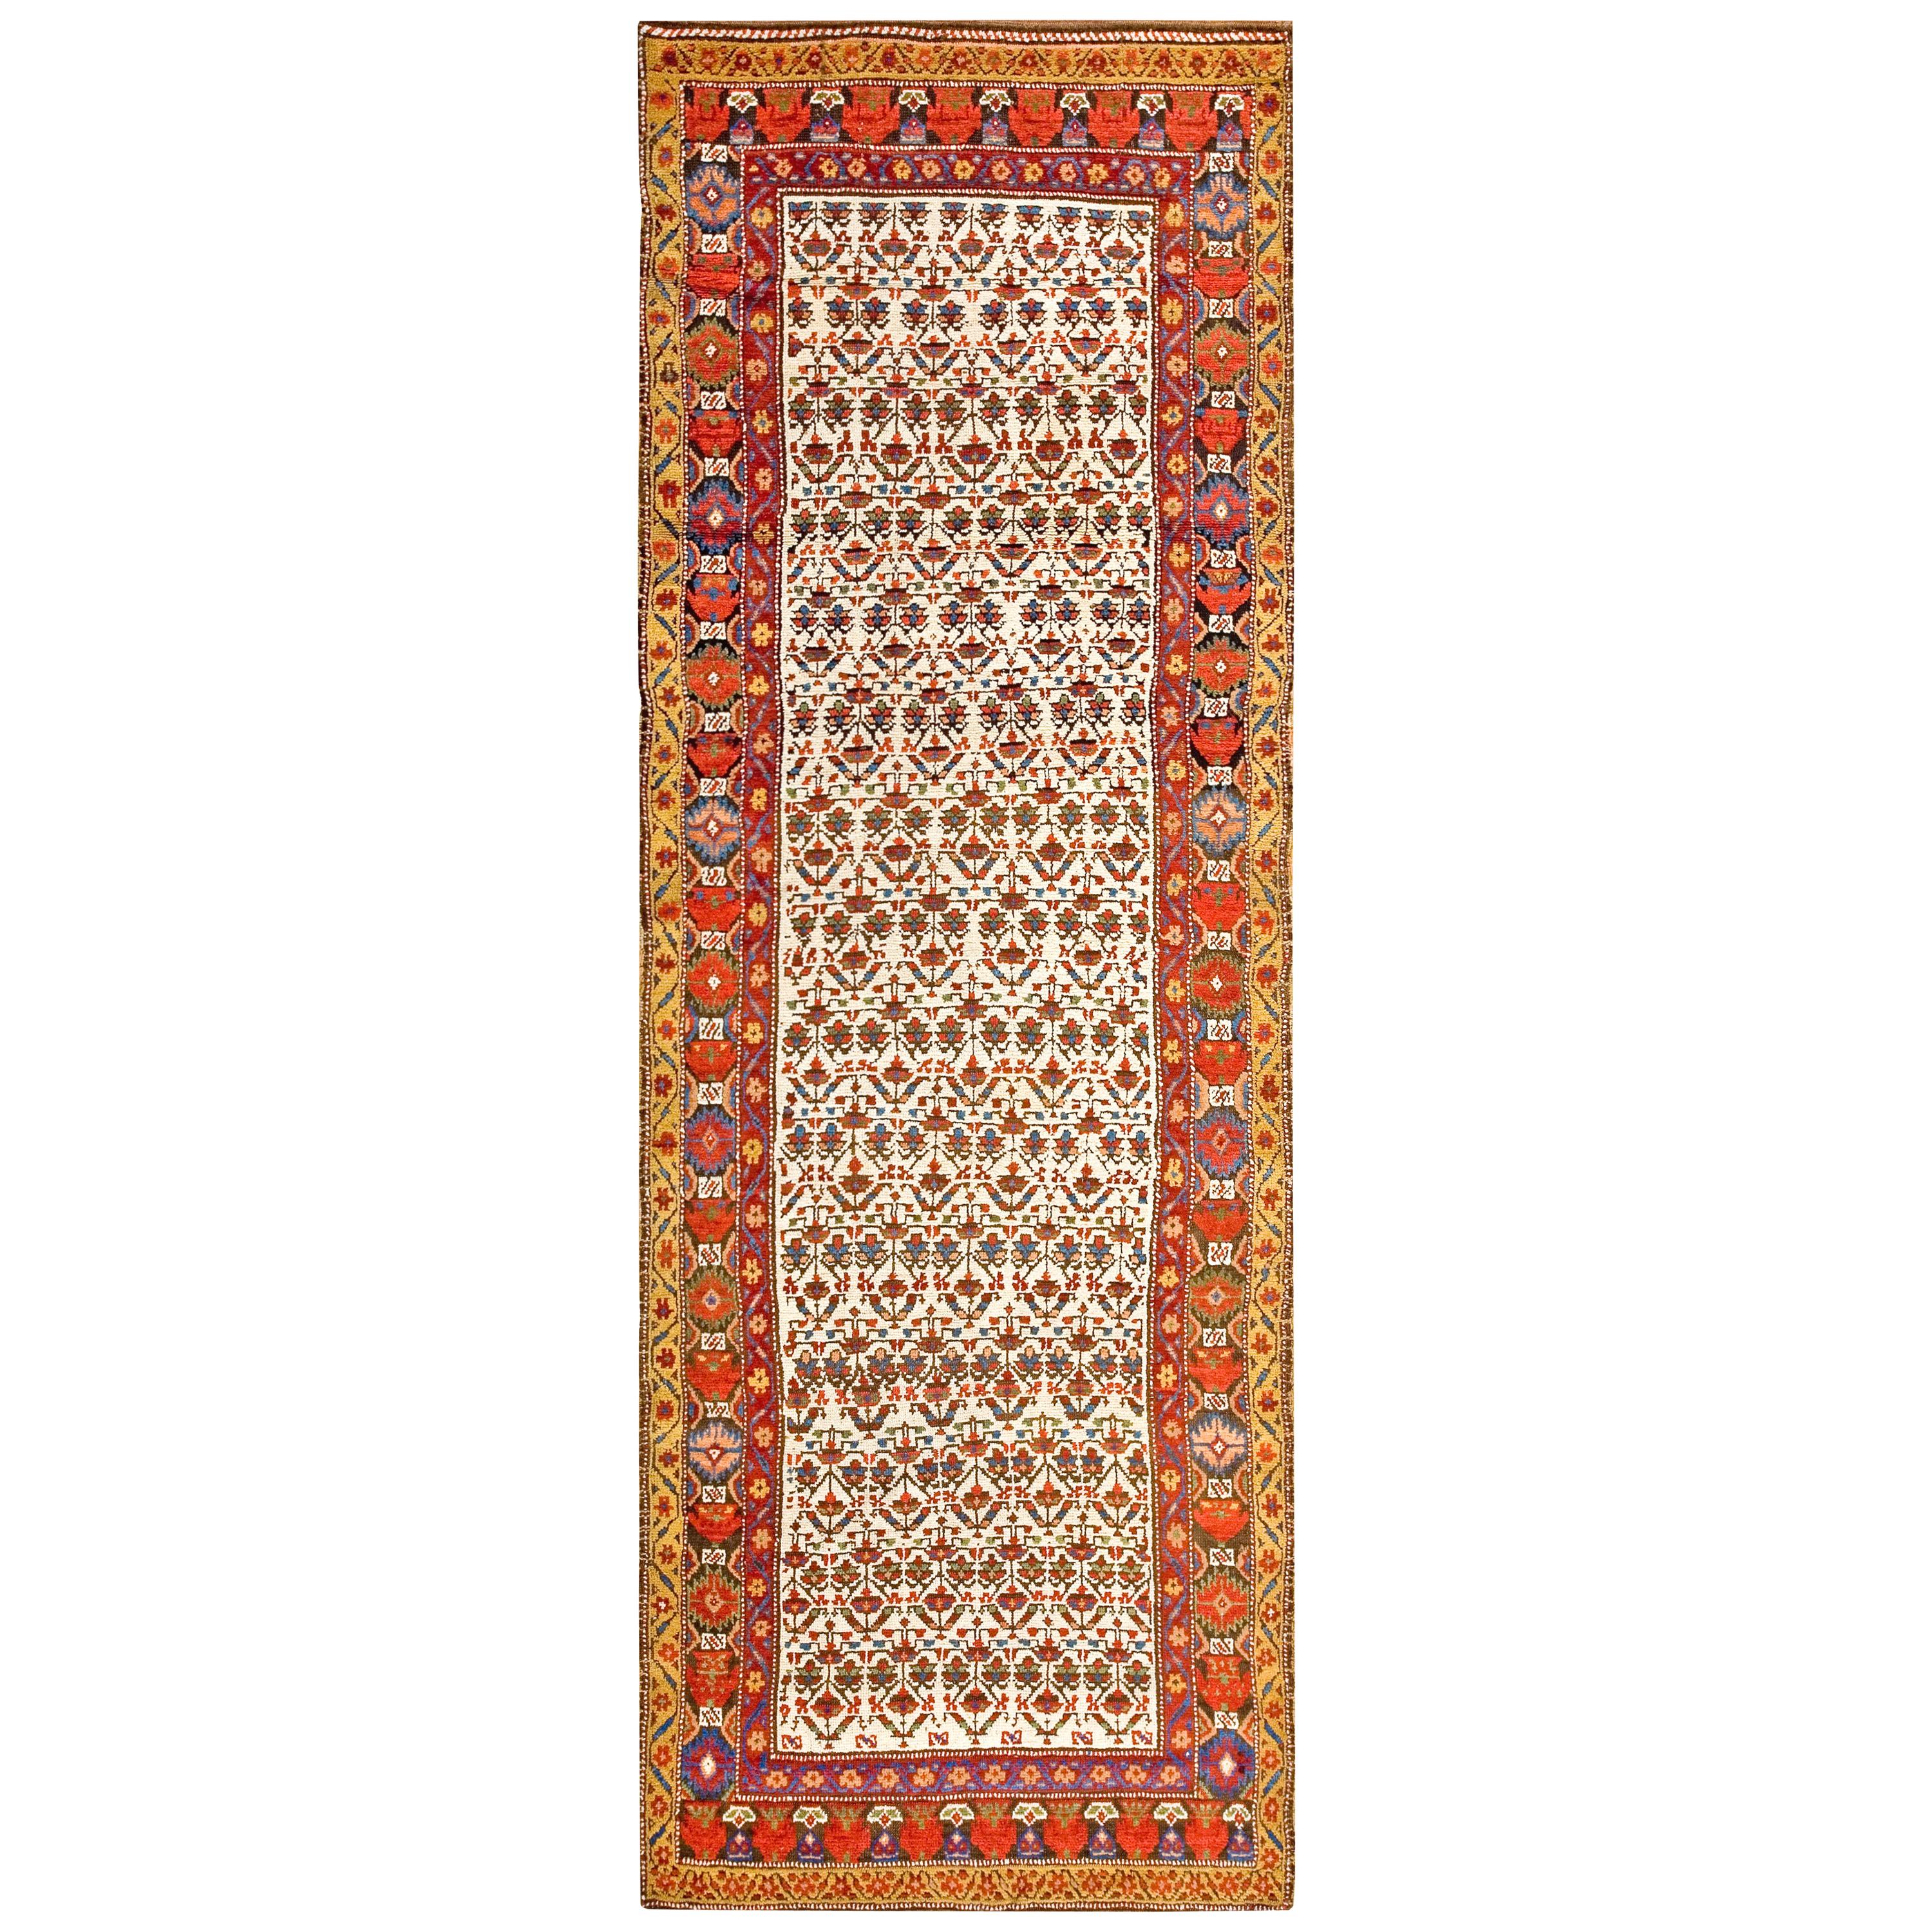 Persischer Kurdischer Teppich aus der Mitte des 19. Jahrhunderts ( 3''6 x 10''6 - 107 x 320)